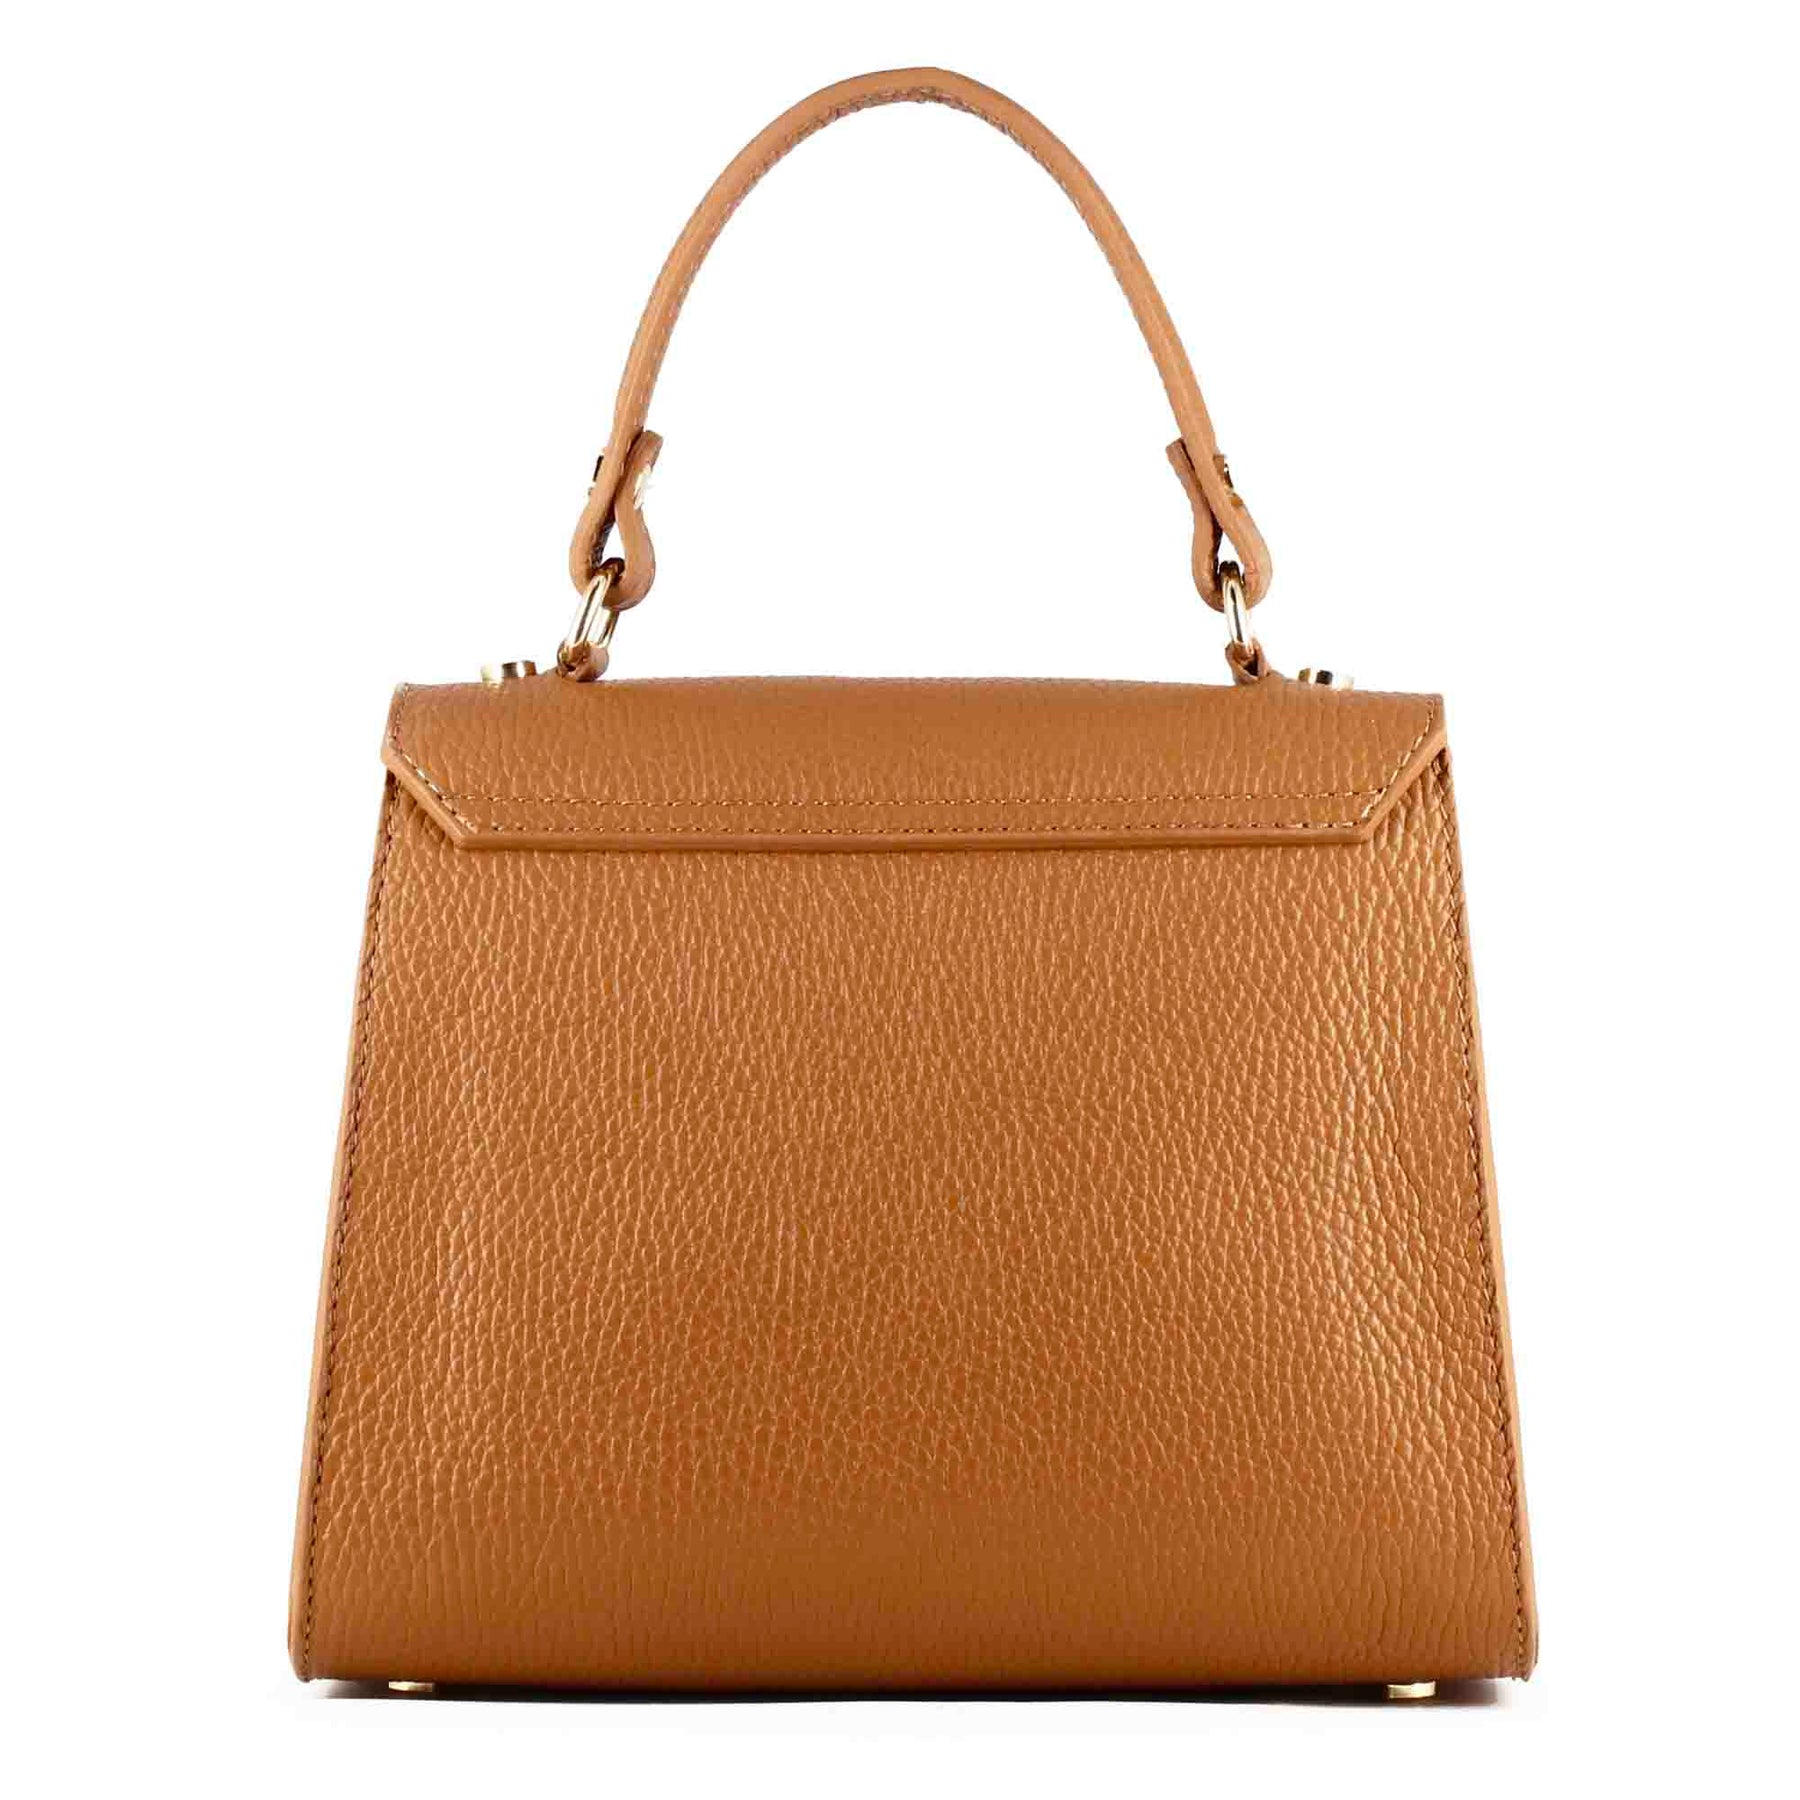 Lady K leather handbag with removable brown shoulder strap